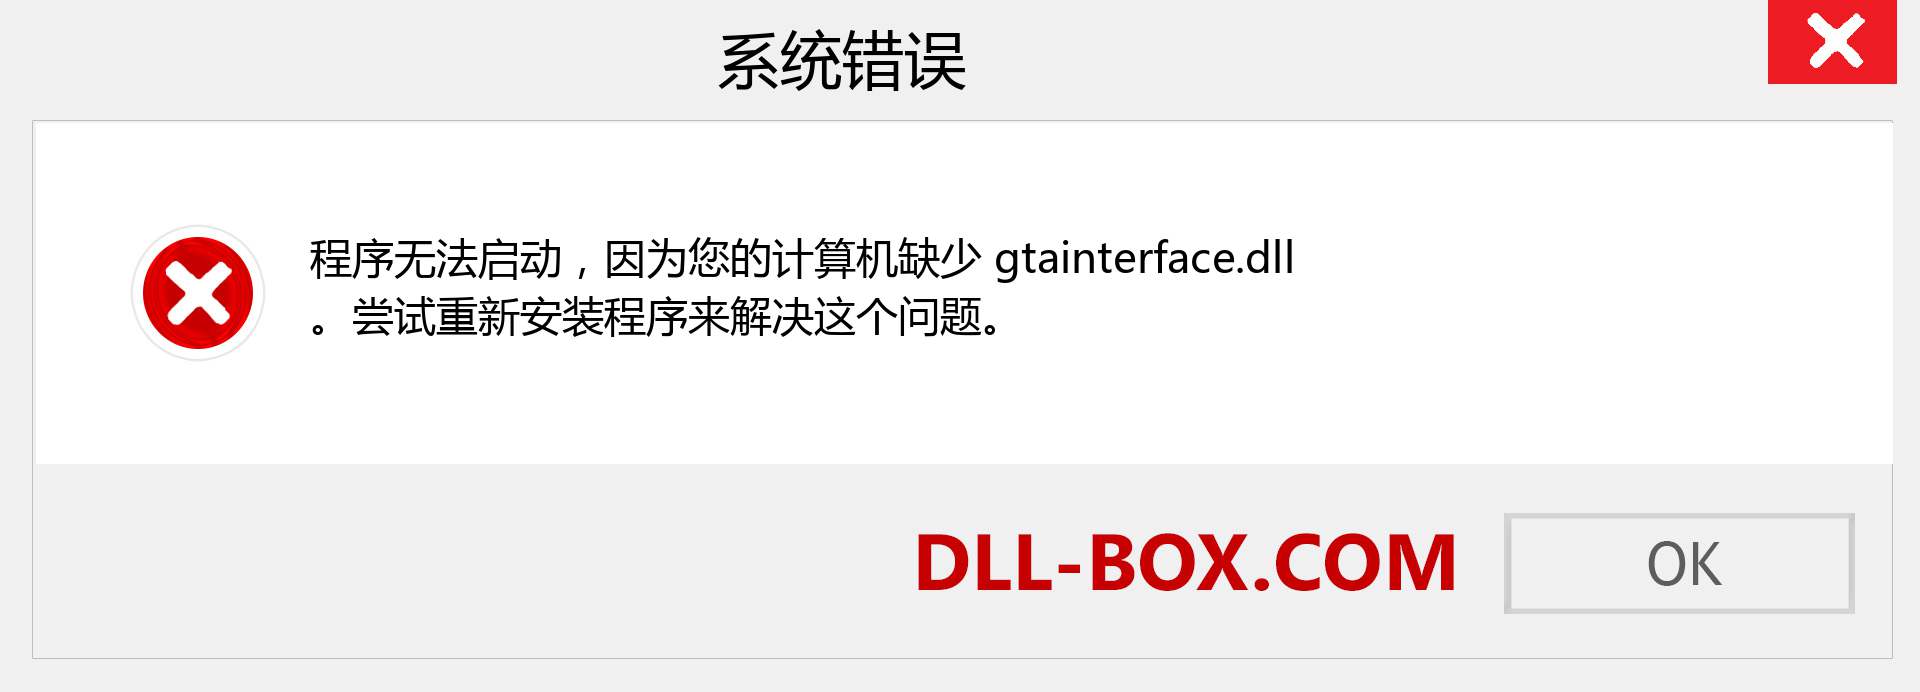 gtainterface.dll 文件丢失？。 适用于 Windows 7、8、10 的下载 - 修复 Windows、照片、图像上的 gtainterface dll 丢失错误